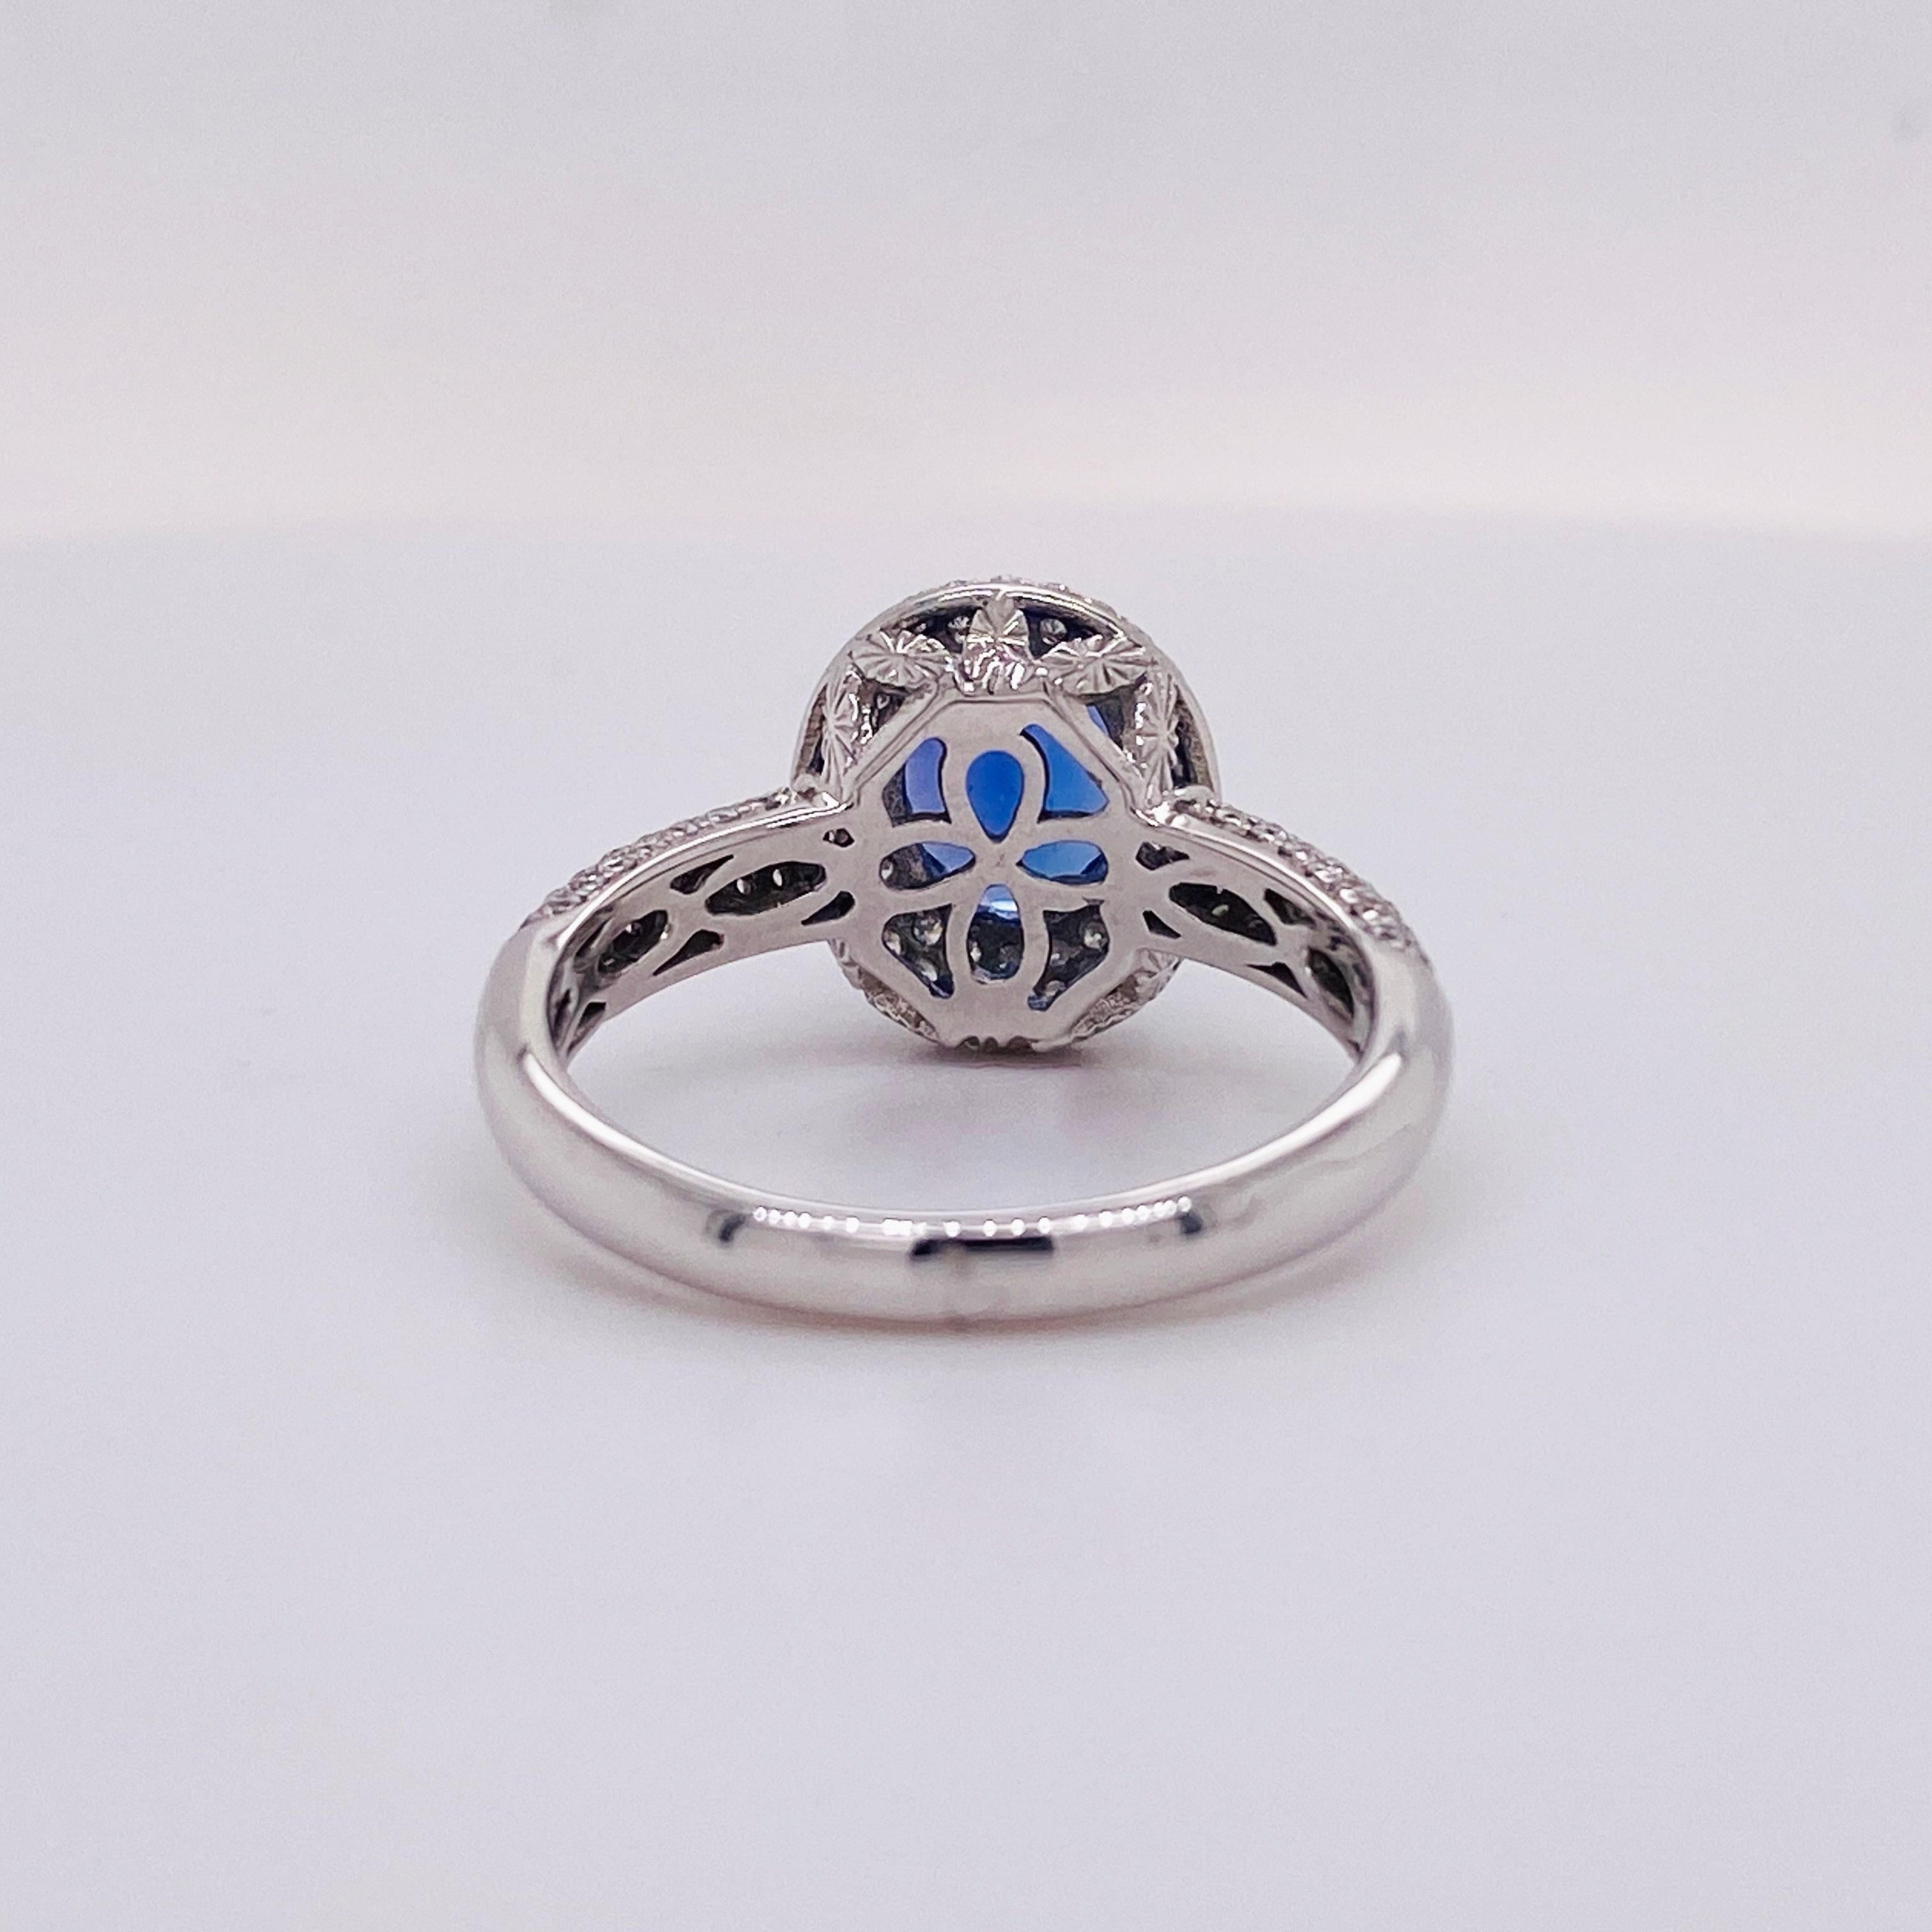 Oval Cut 1.5 Carat Tanzanite Ring, 14 Karat White Gold Ring, .50 Carat Diamond Ring Halo For Sale